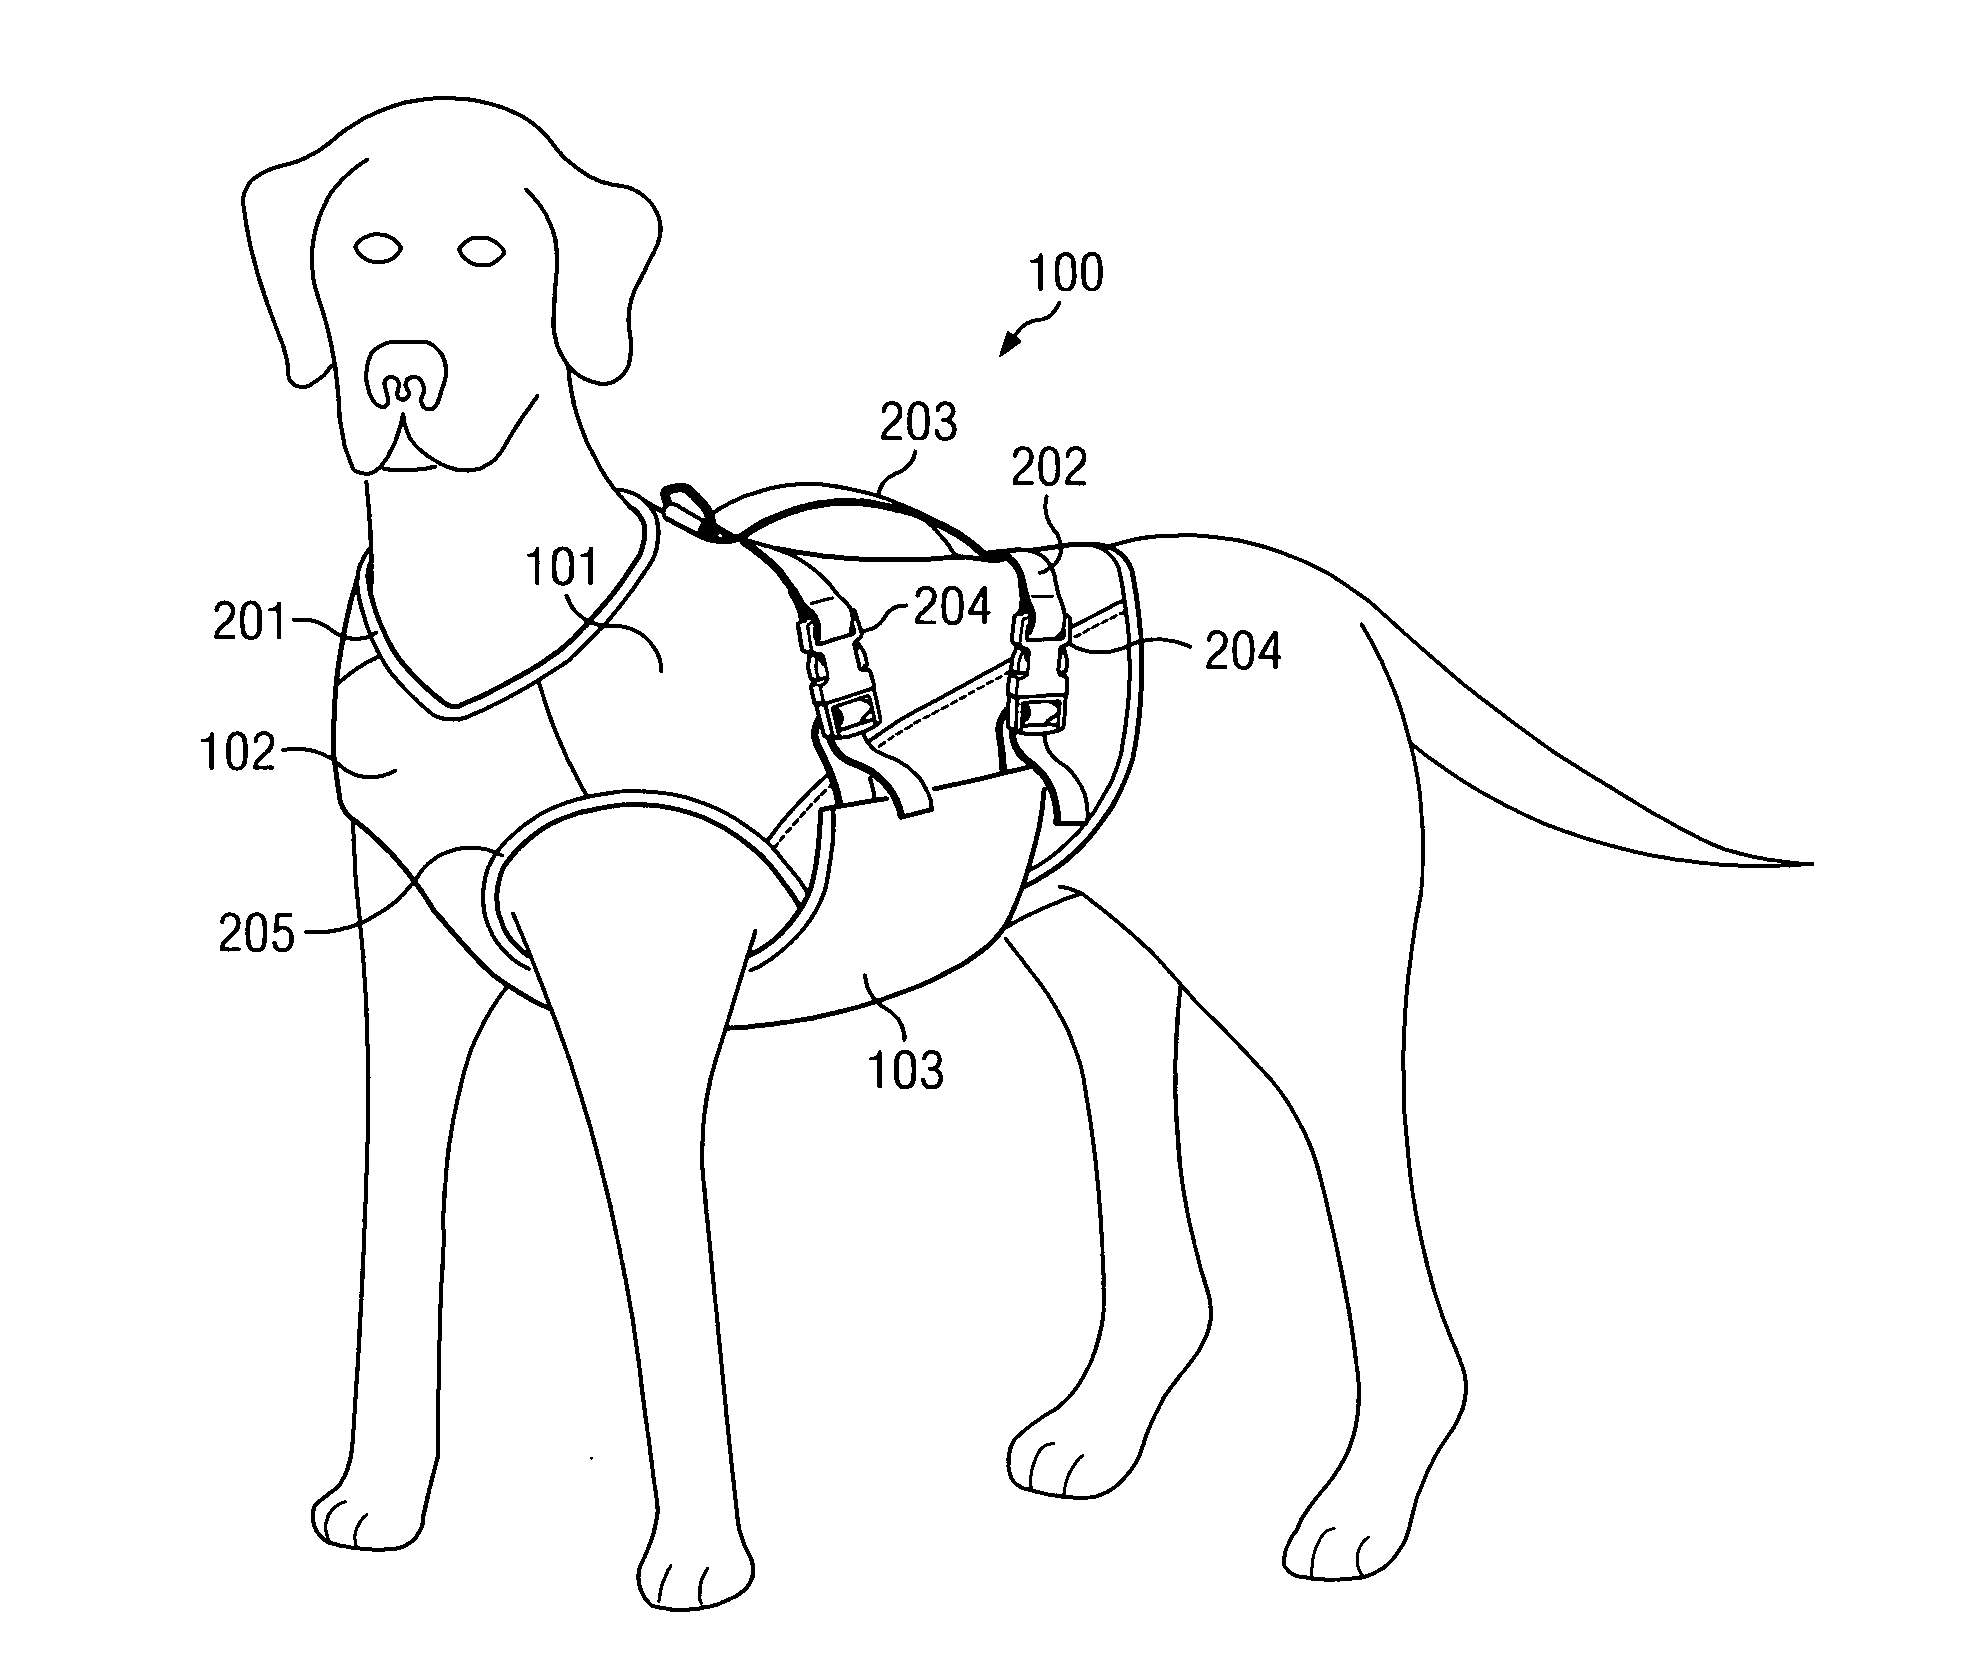 Canine flotation apparatus